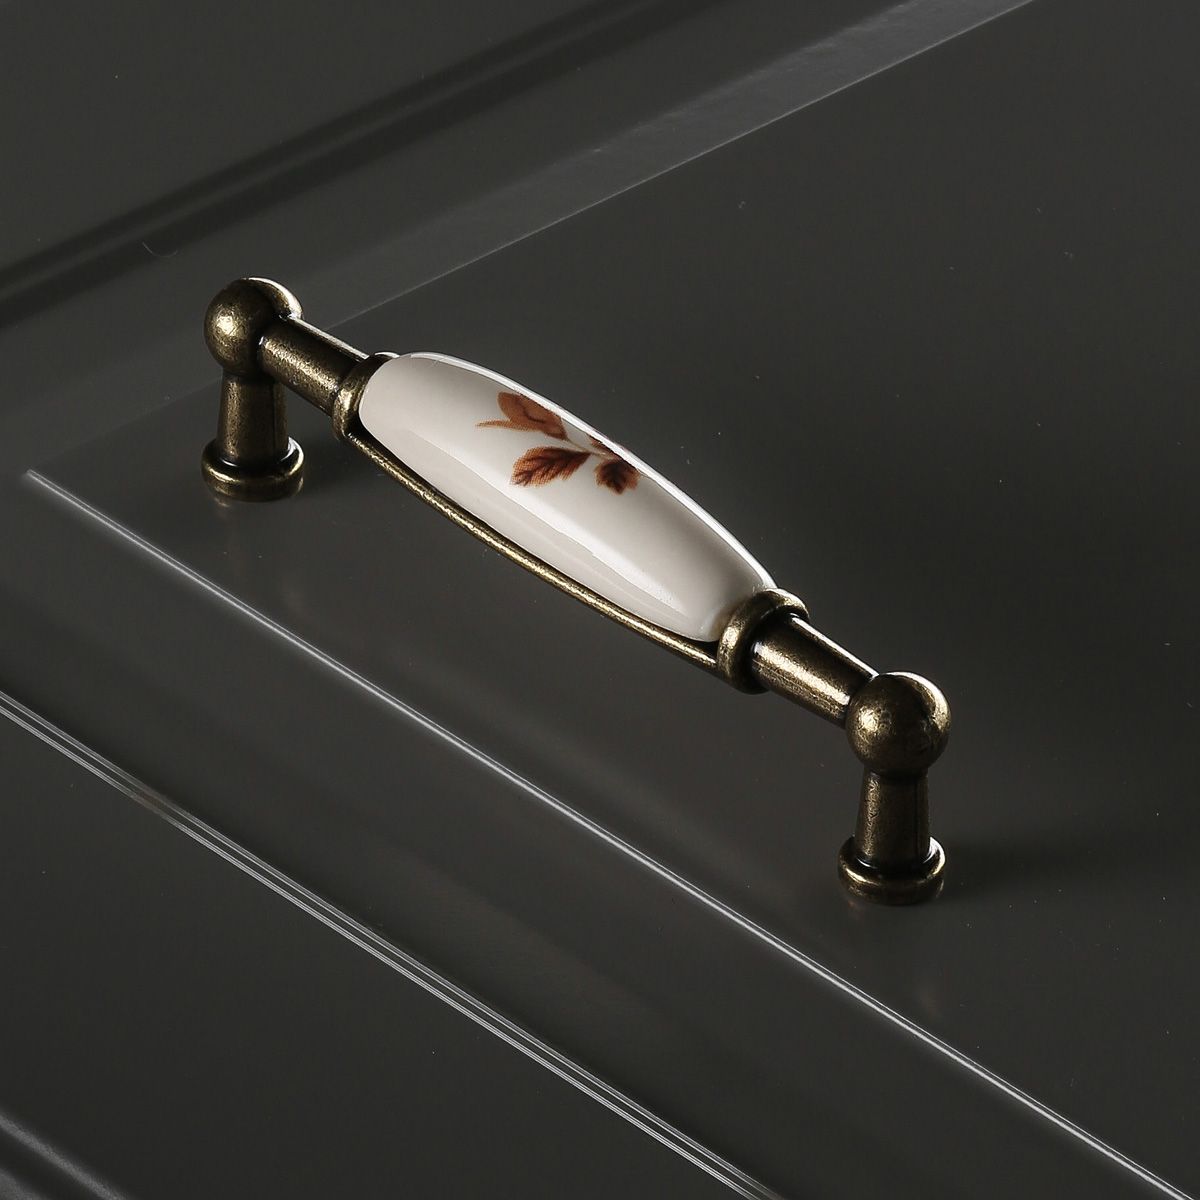 Ручка мебельная керамика дуга 96мм UP-WP0728-BB (коричневый) GTV 3589 Ручка мебельная керамика дуга 96мм UP-WP0728-BB (коричневый) - фото 5